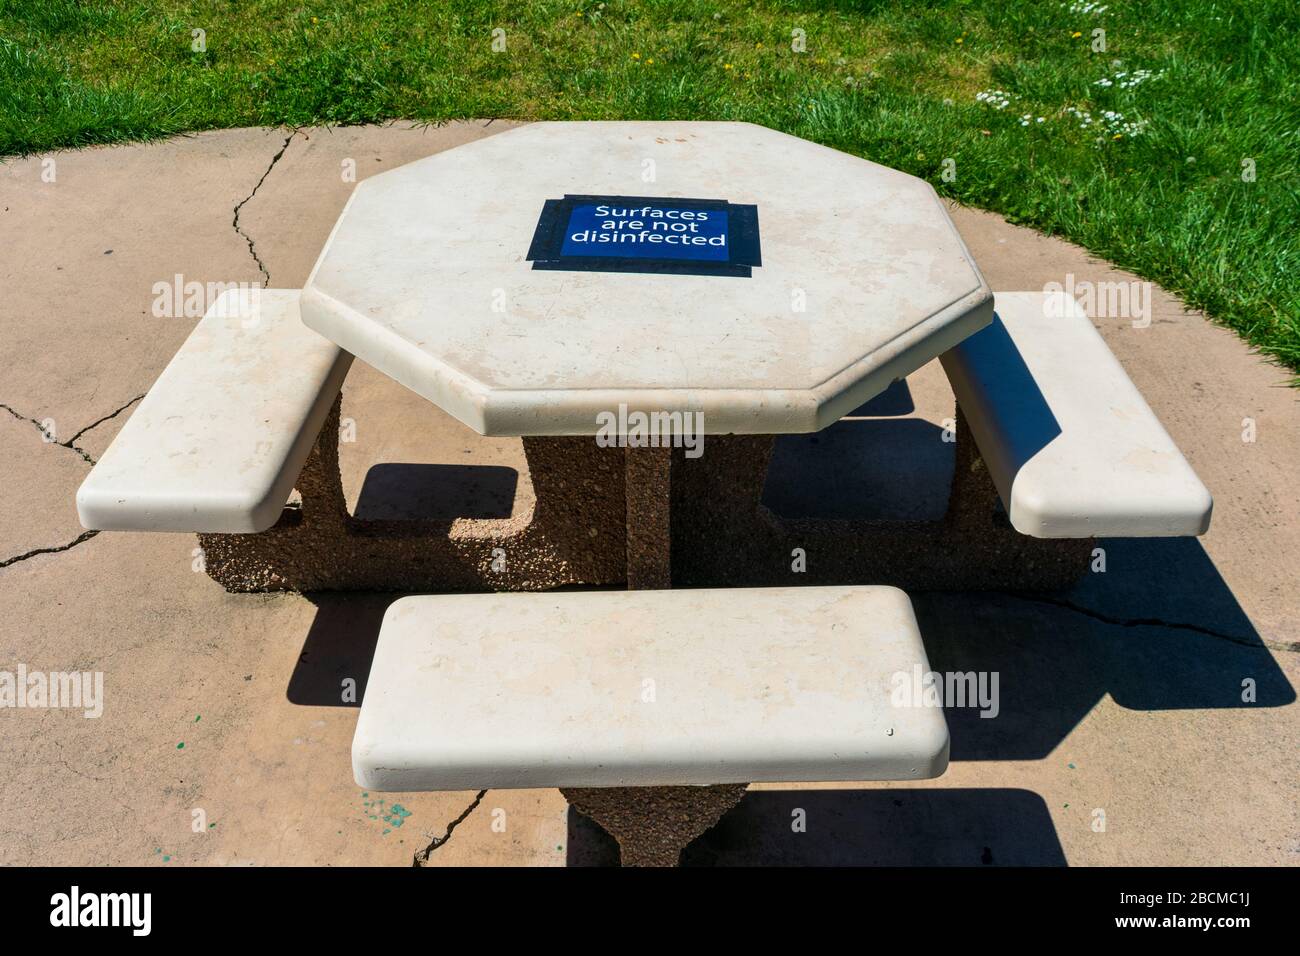 Tavolo da picnic in cemento nel parco pubblico con superficie non disinfettata cartello di avvertenza temporaneo attaccato al piano. Foto Stock